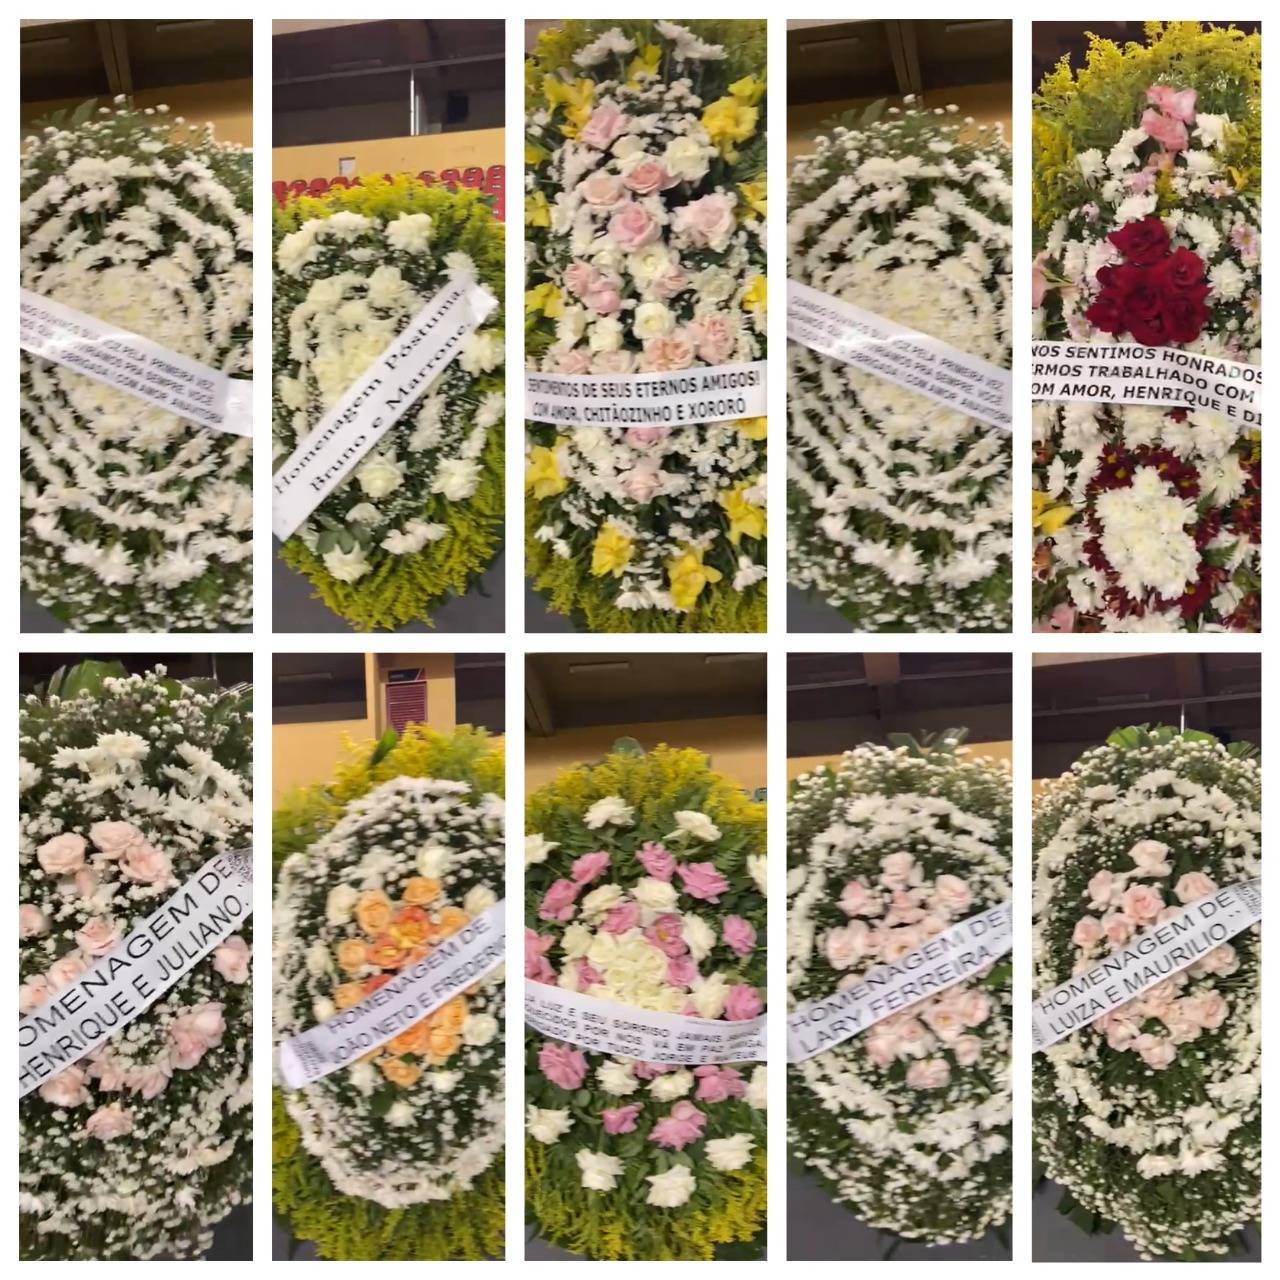 Coroas de flores enviadas por artistas e políticos ao velório da cantora Marília Mendonça